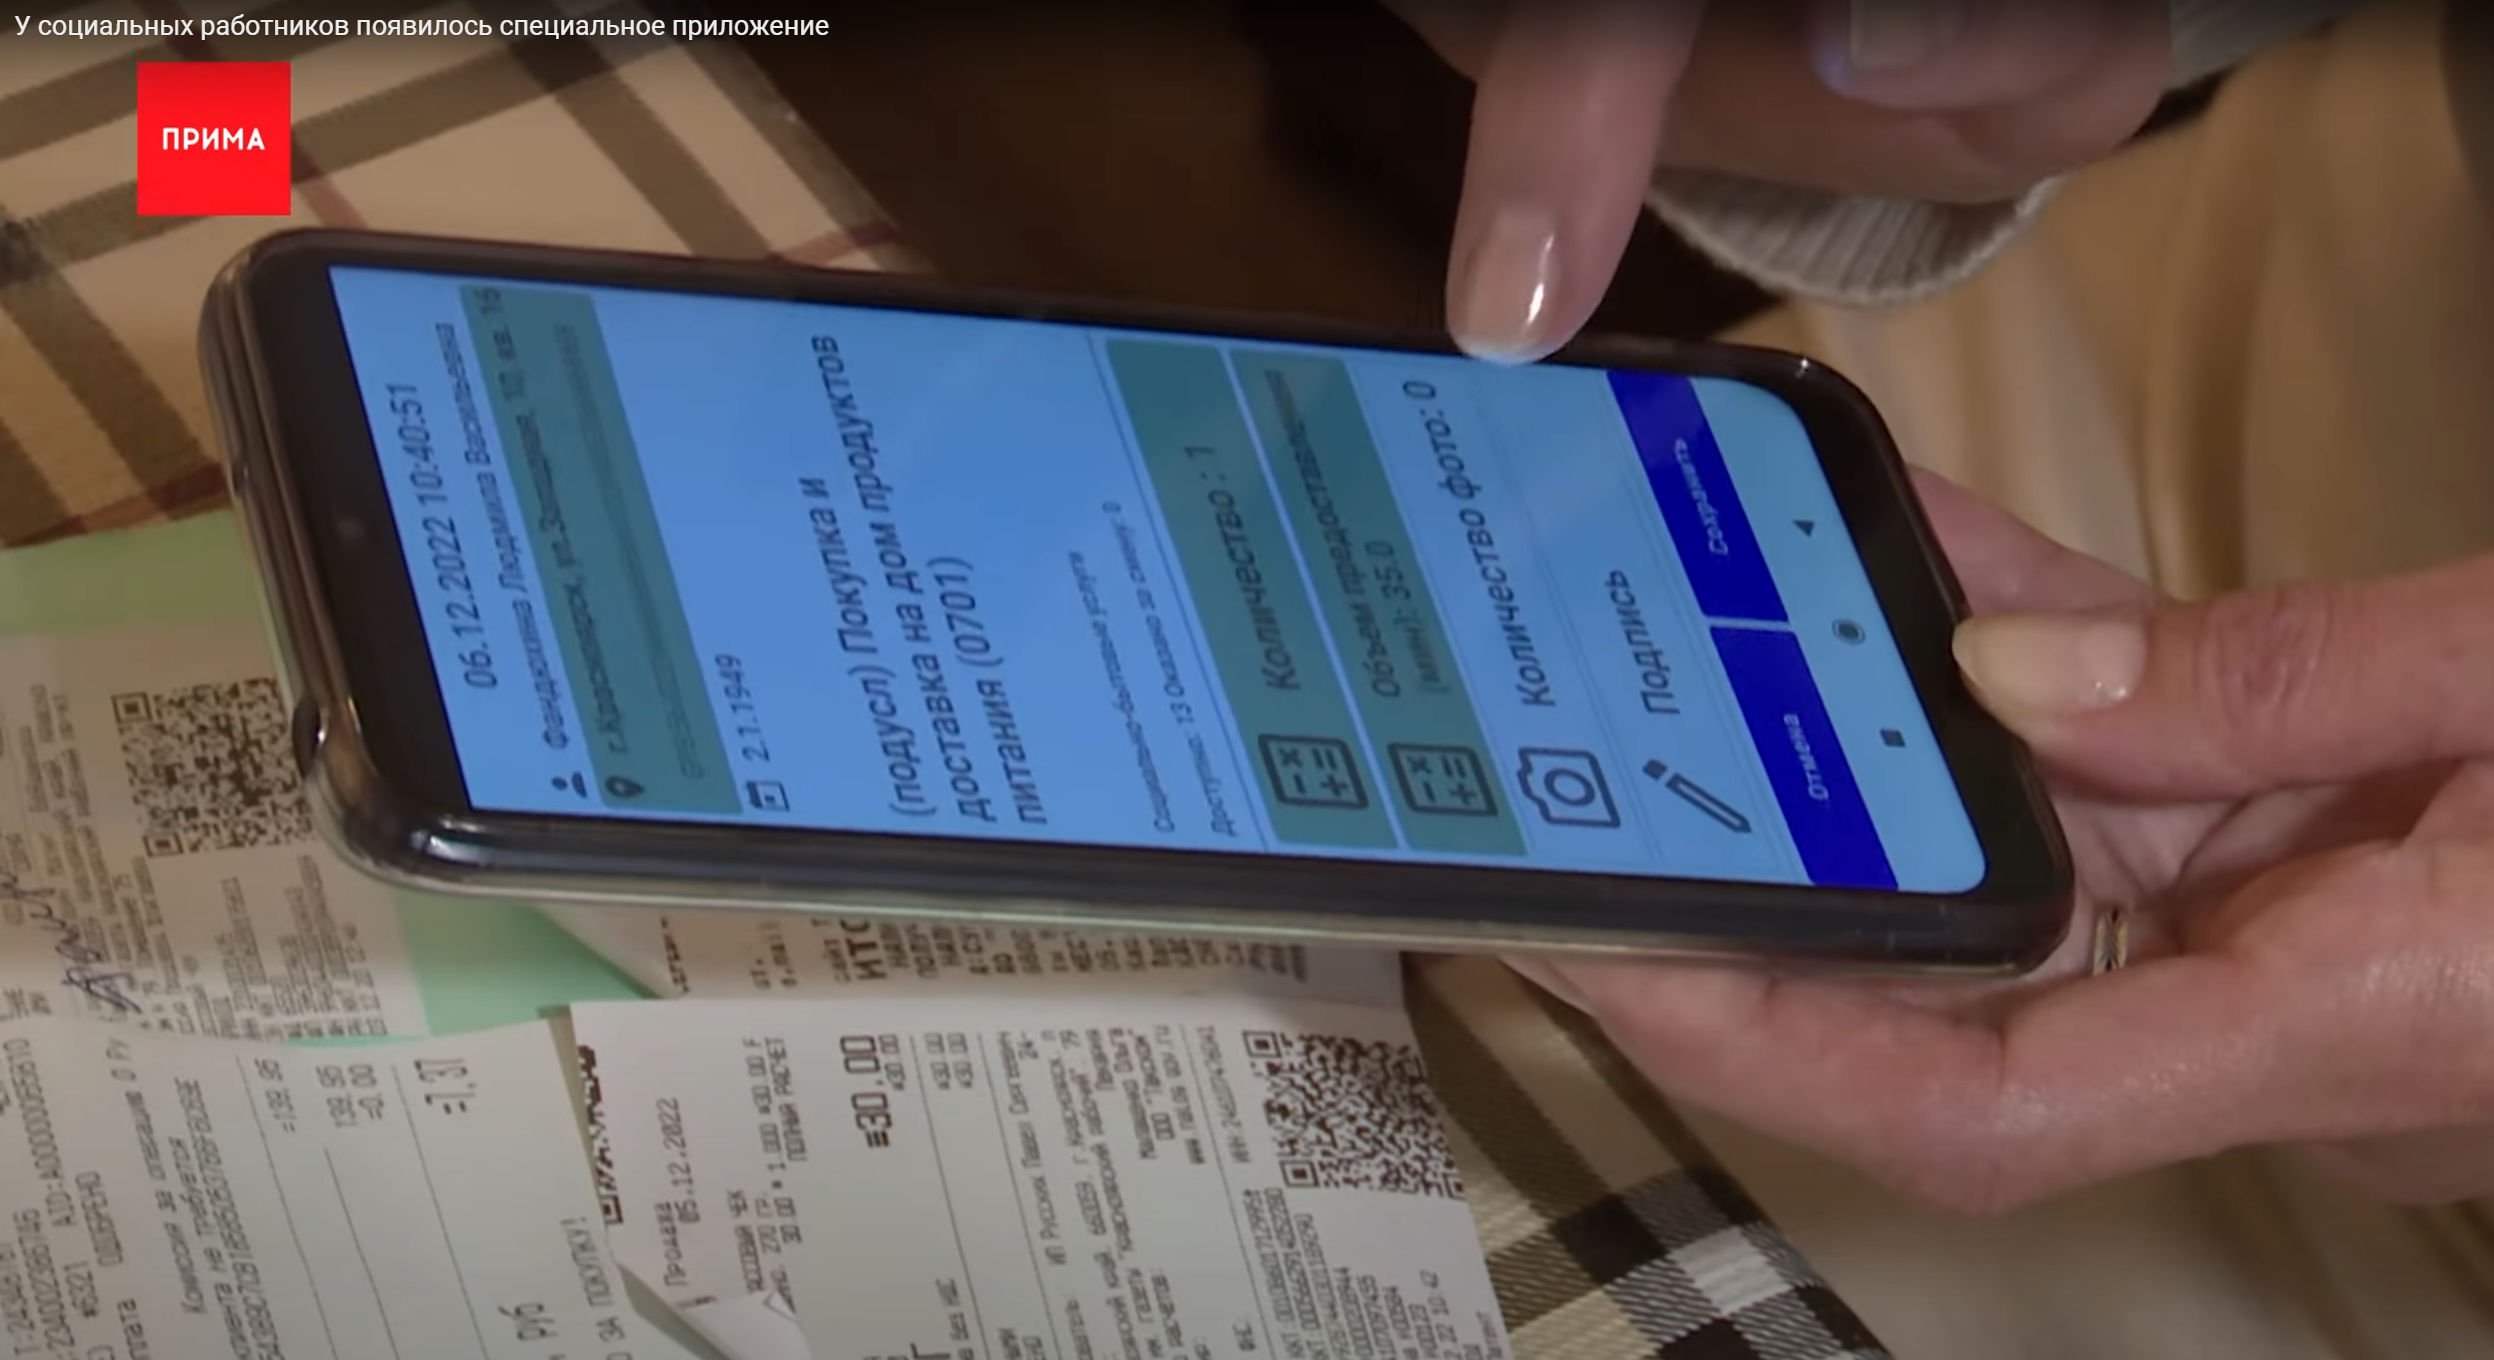 Мобильное приложение «Кондуит»: высокие технологии на службе у социальных работников Красноярского края